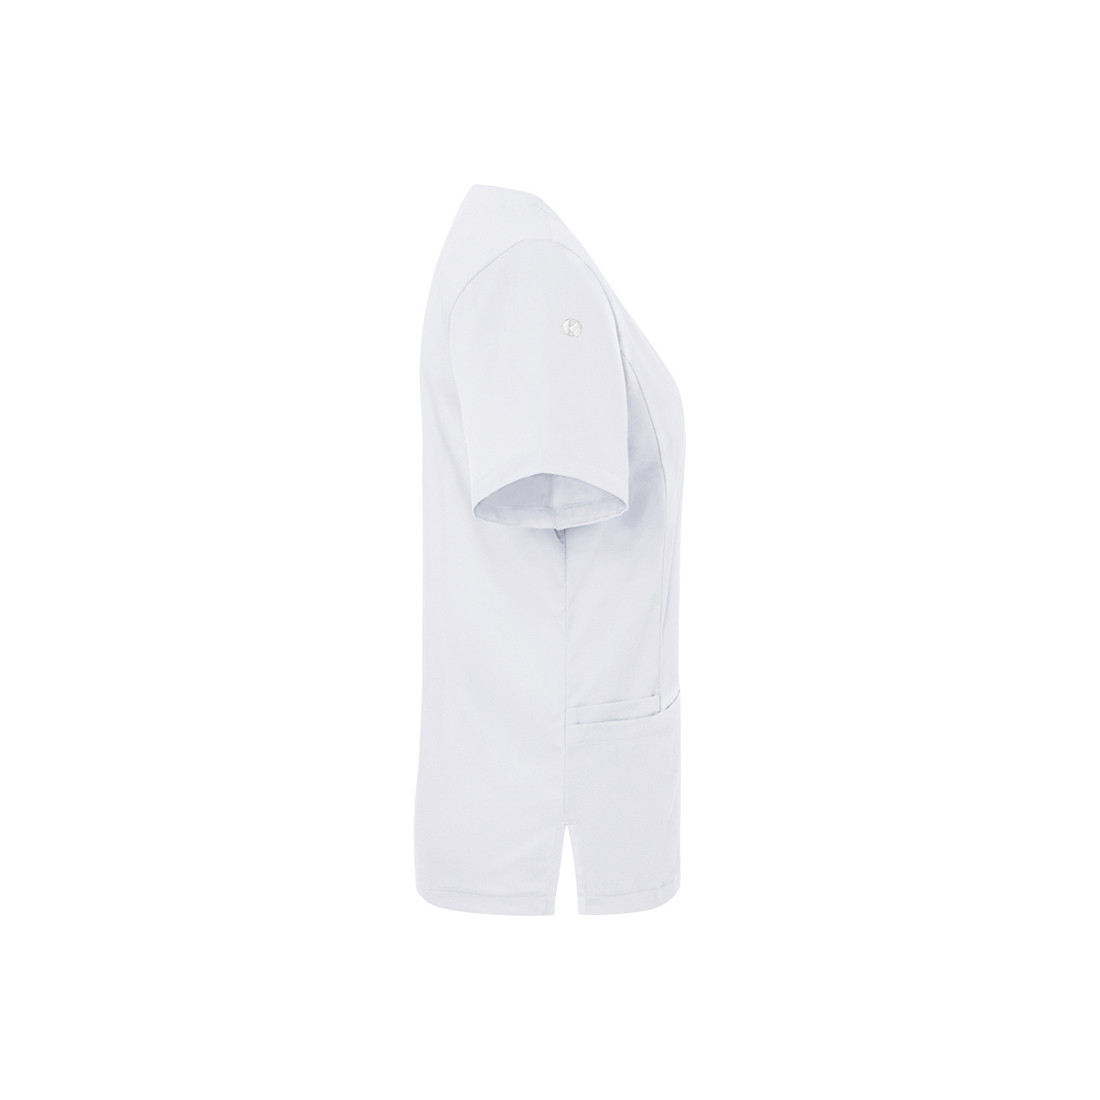 Casacca funzionale da donna a maniche corte Essential - Abbigliamento di protezione